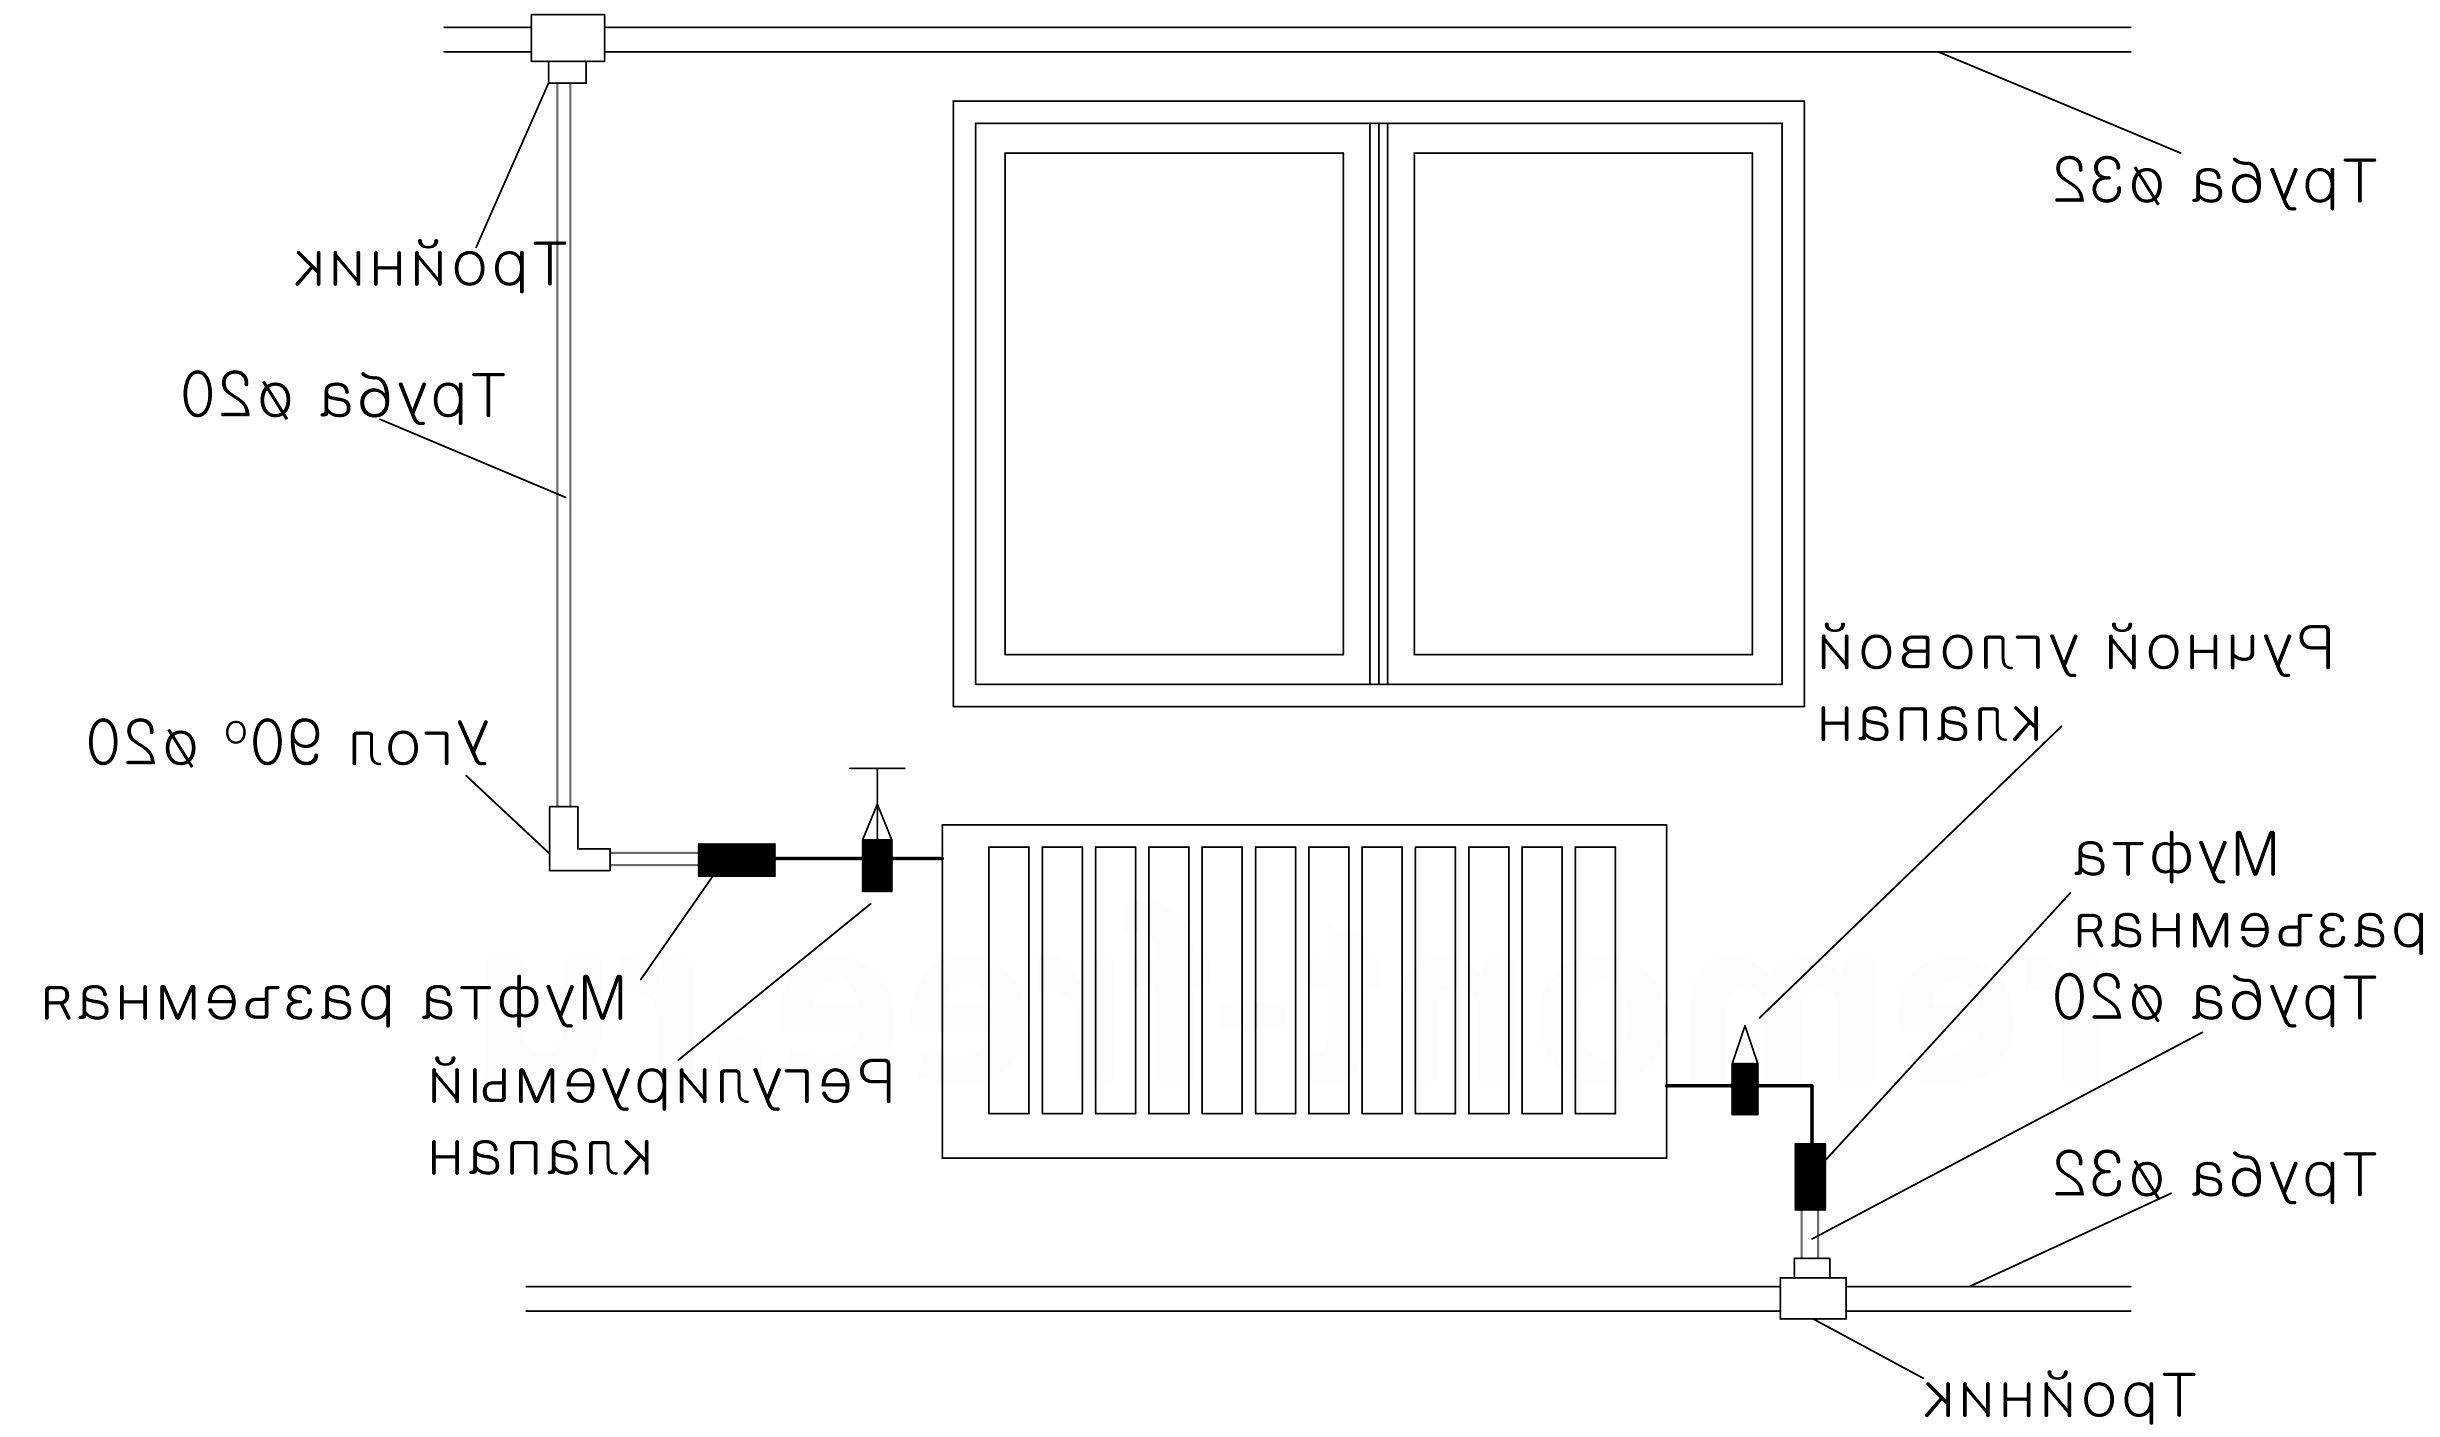 Установка радиаторов отопления своими руками, монтаж и подключение, фото